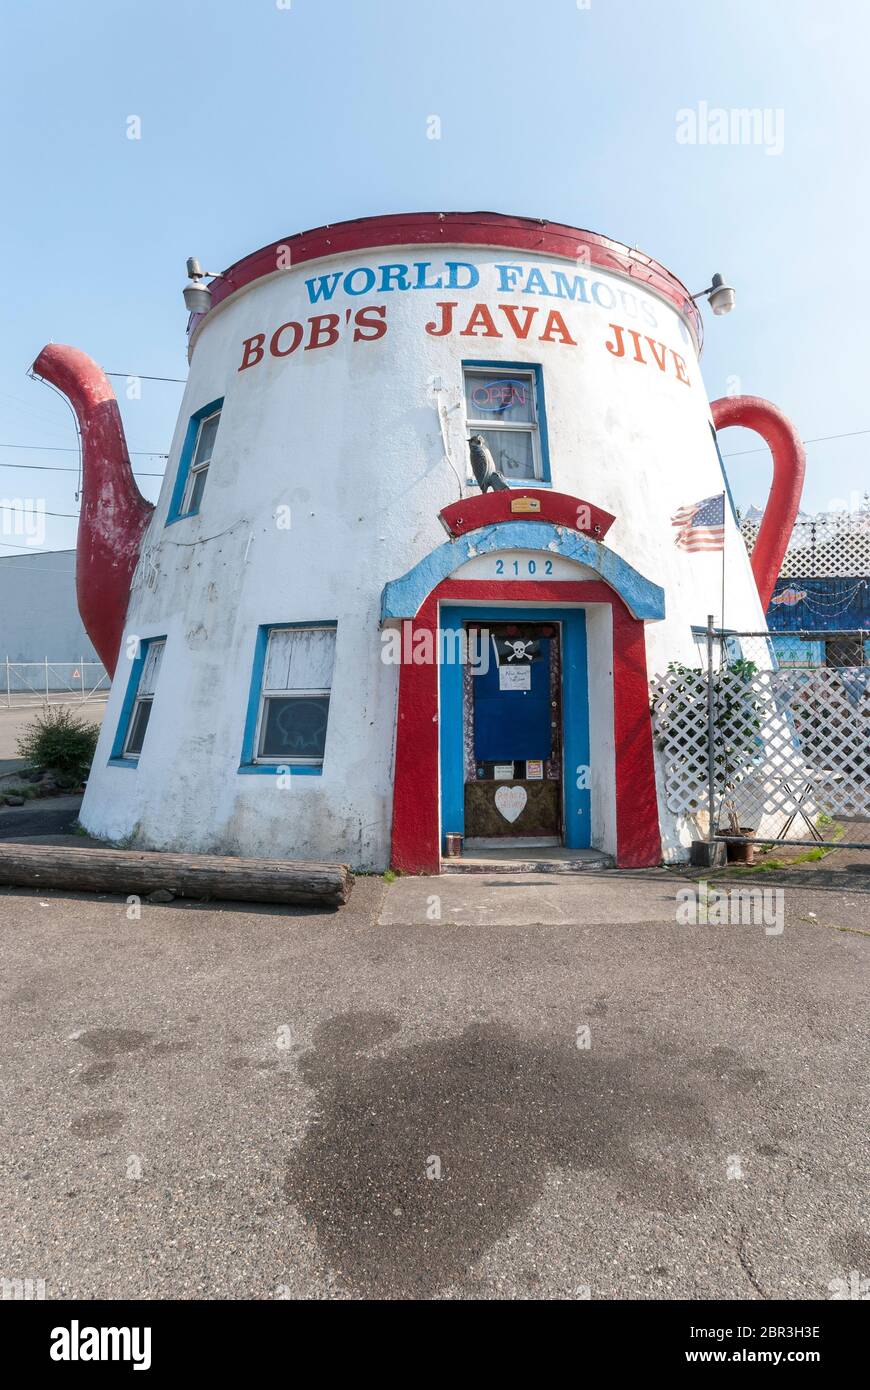 World Famous Bob's Java Jive coffee pot shaped restaurant at 2102 South Tacoma Way, in Tacoma Washington. Stock Photo